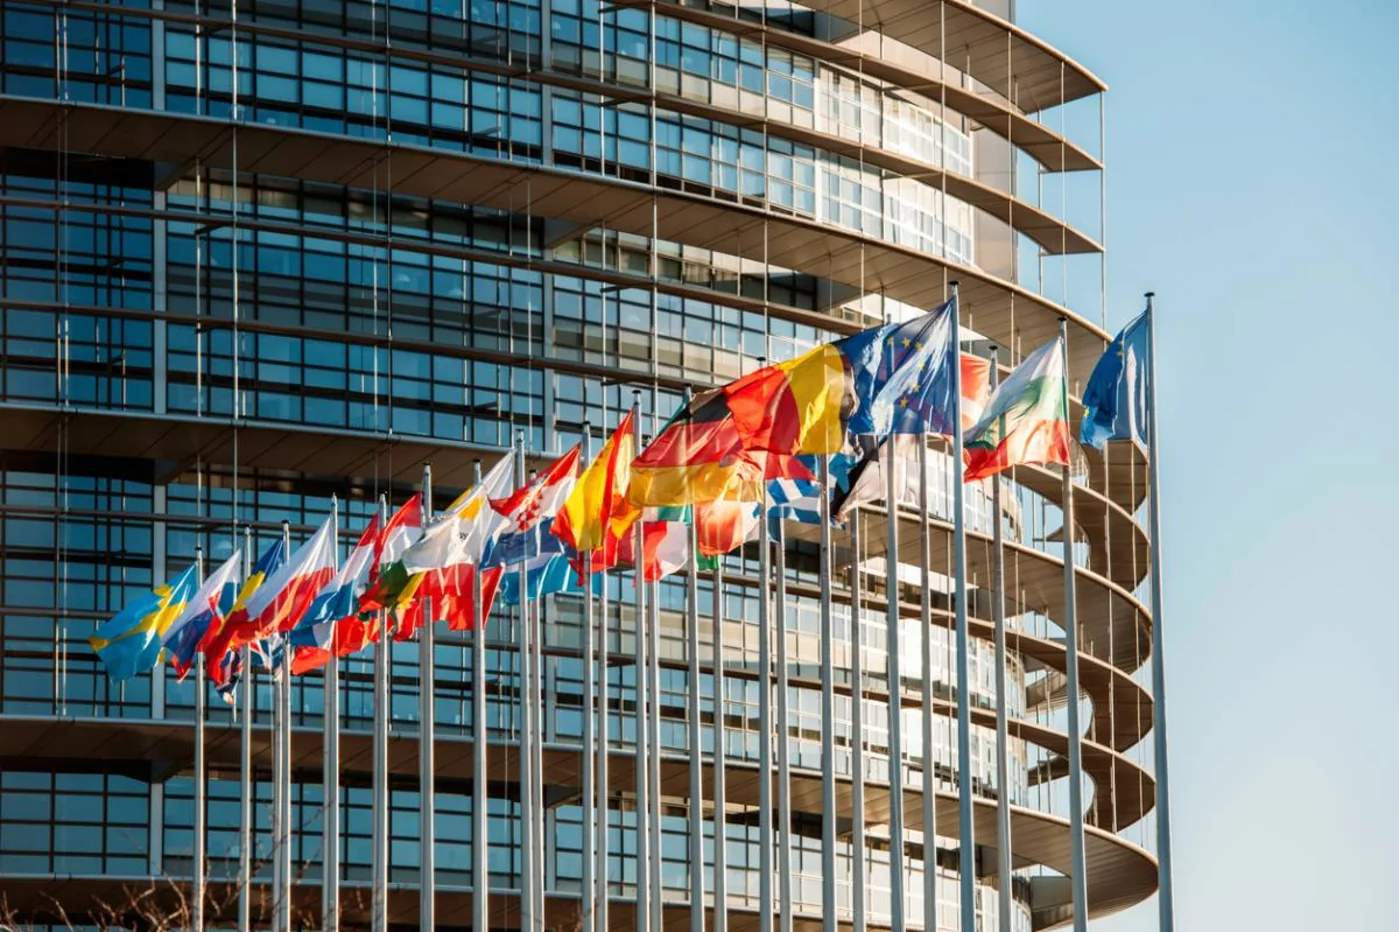 La Comisión Especial sobre el COVID-19 del Parlamento Europeo reconoce la labor de la Farmacia durante la pandemia y recomienda  su inclusión en los programas de salud